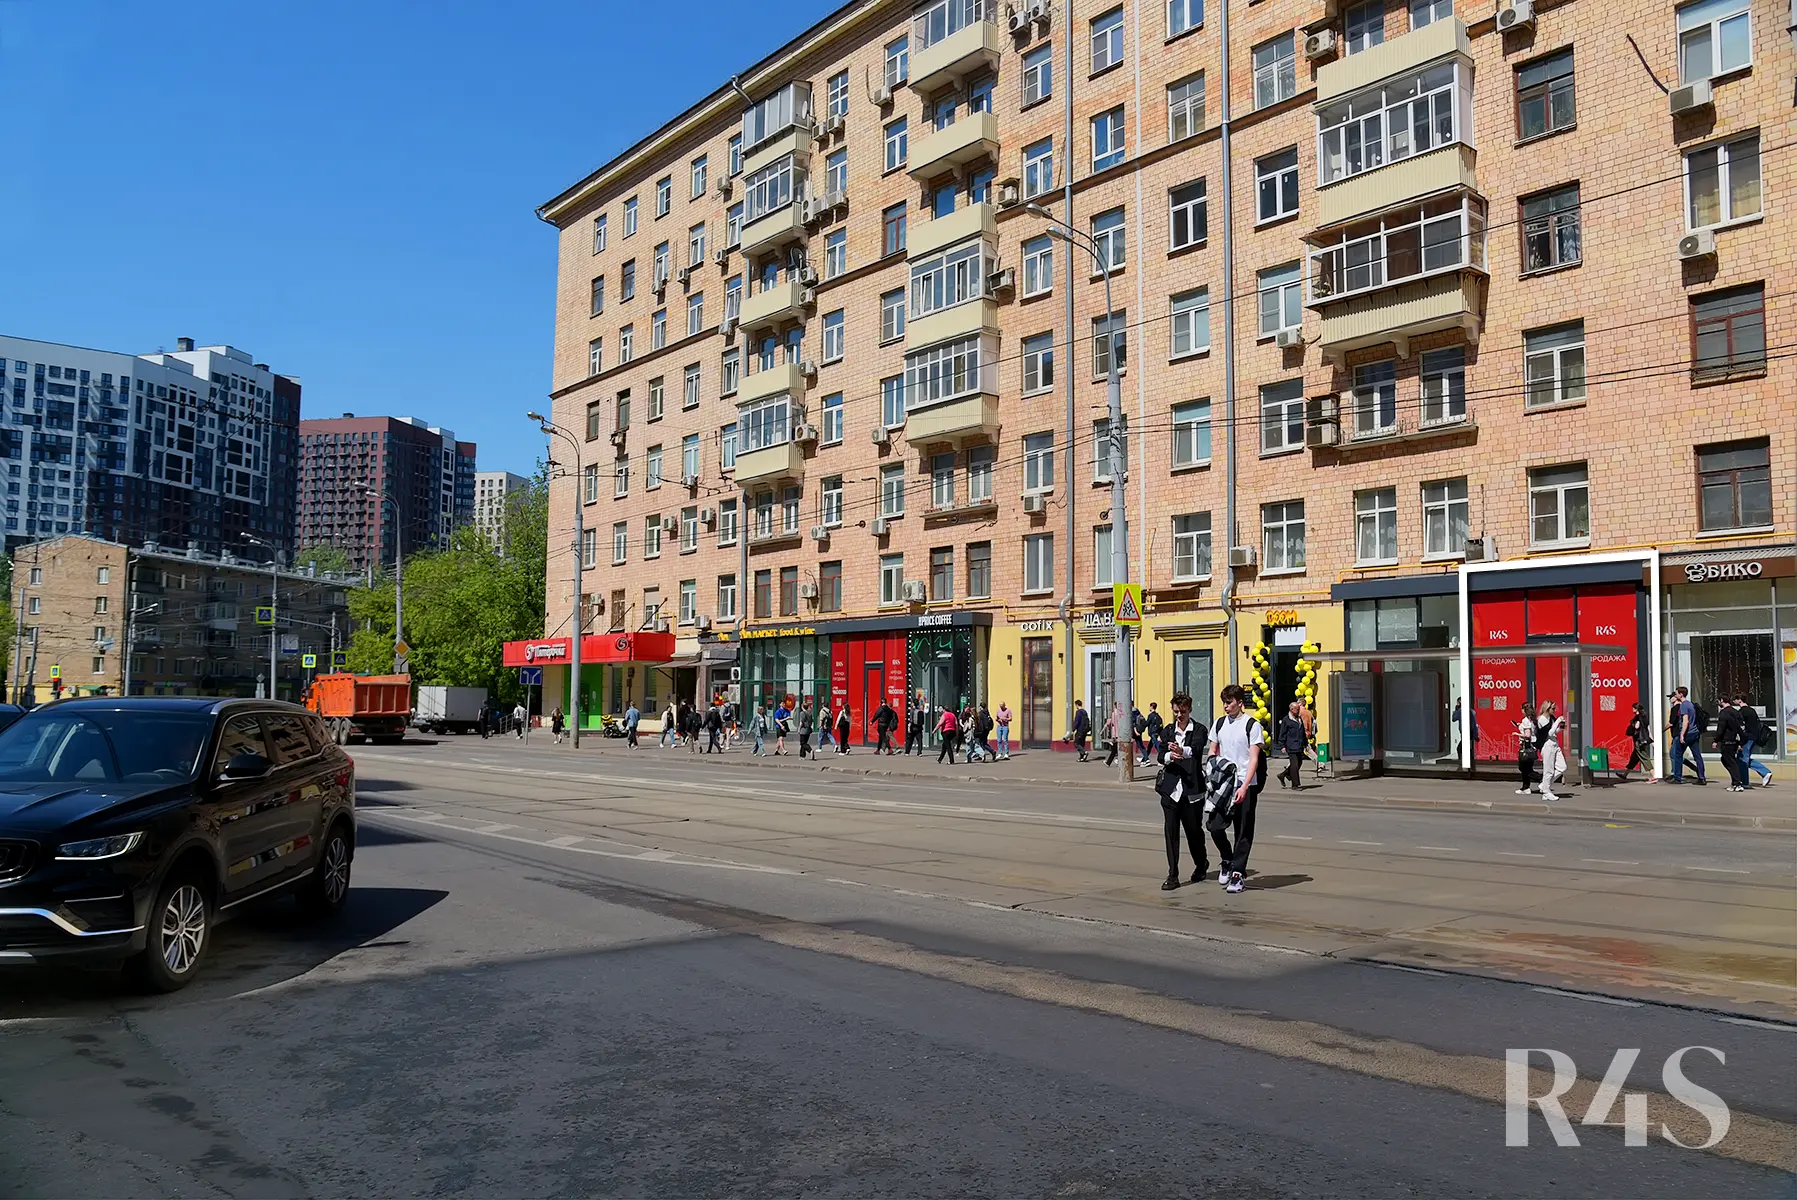 Продажа торгового помещения площадью 168.6 м2 в Москве: Красноказарменная, 23 R4S | Realty4Sale